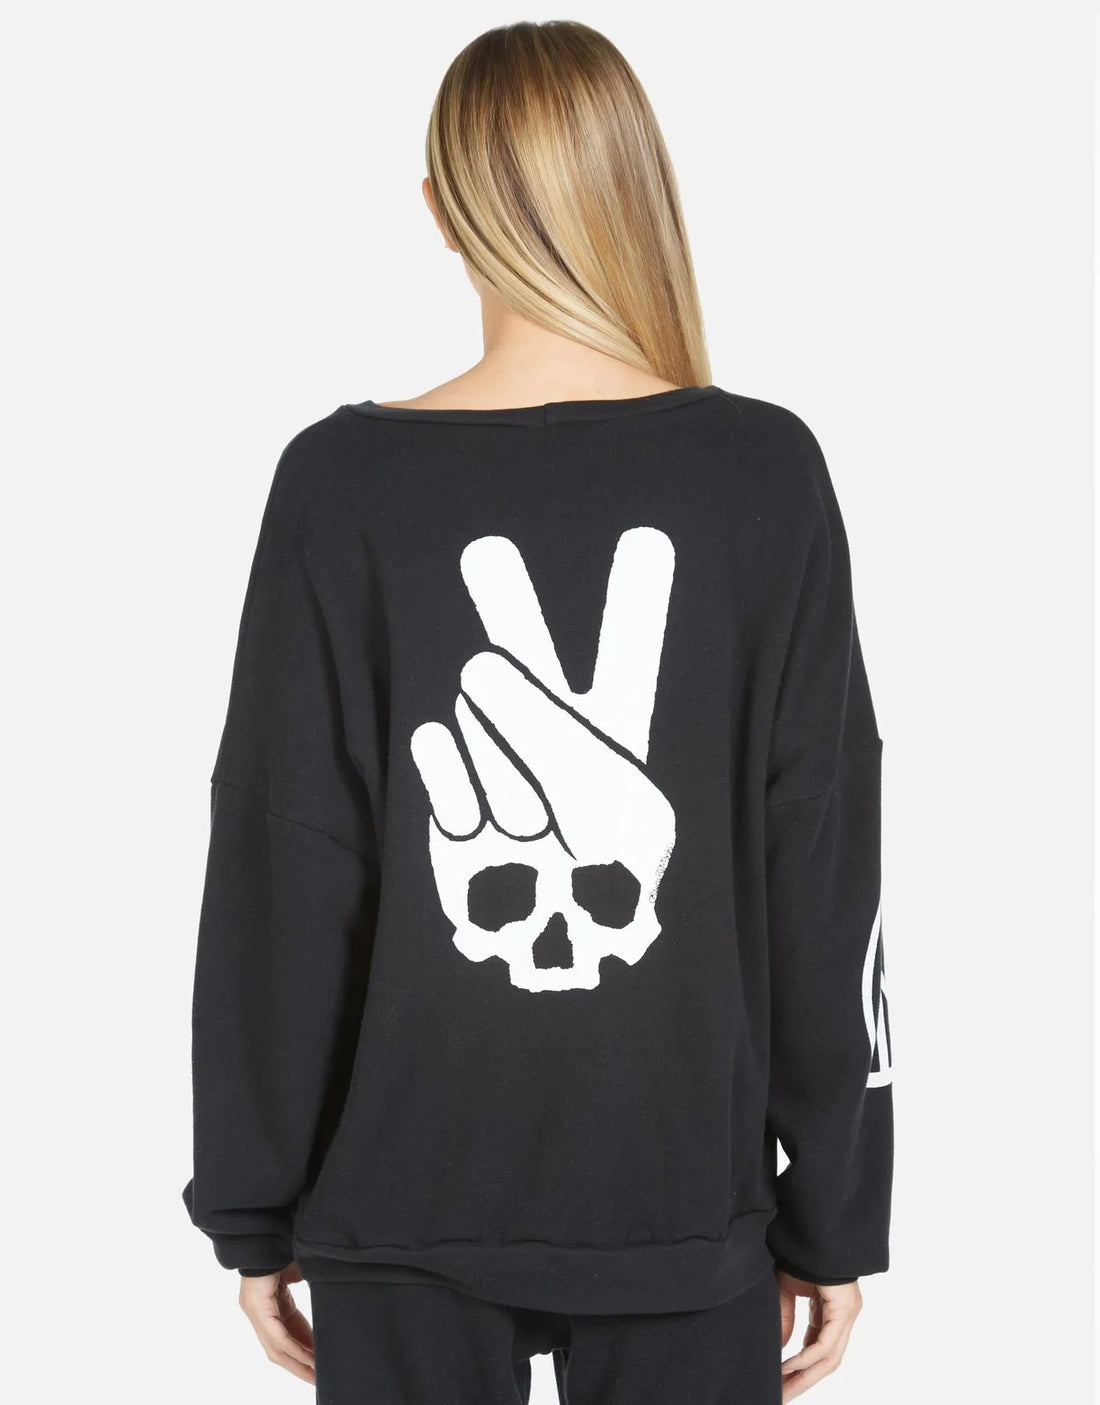 Shop Lauren Moshi Sierra Skull Peace Hand Sweatshirt - Premium Sweater from Lauren Moshi Online now at Spoiled Brat 